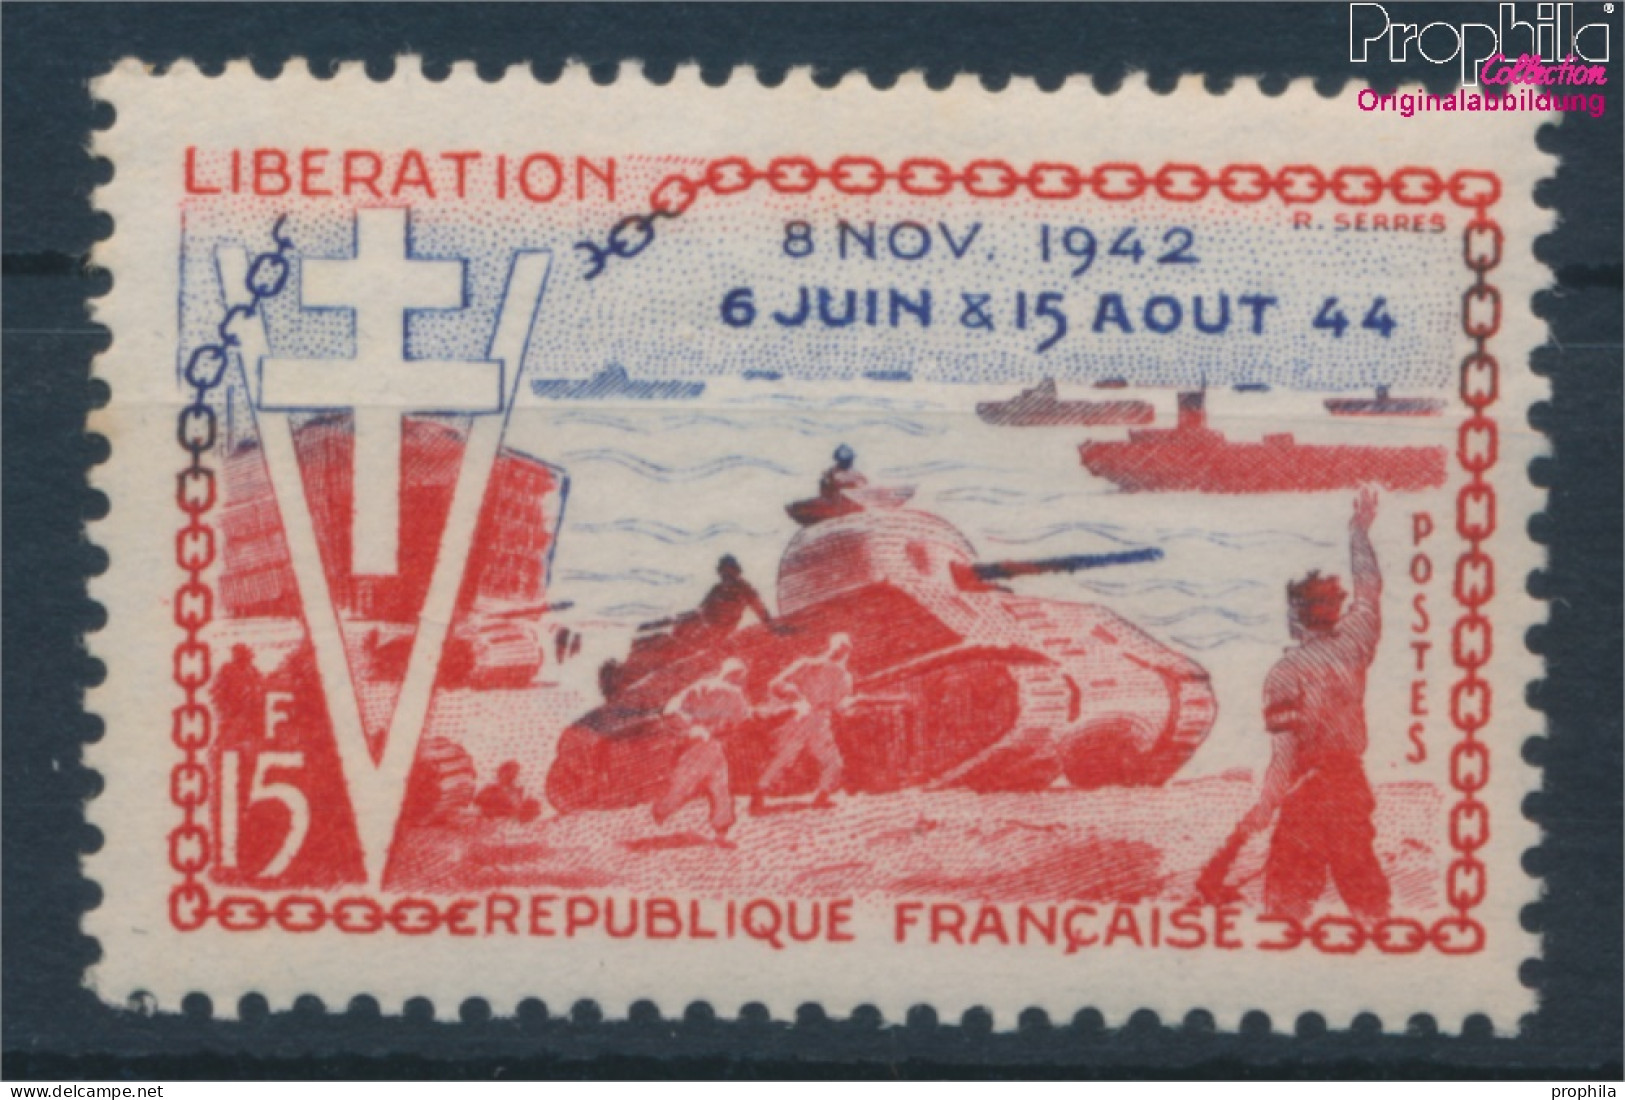 Frankreich 1003 (kompl.Ausg.) Postfrisch 1954 D-Day (10387586 - Neufs